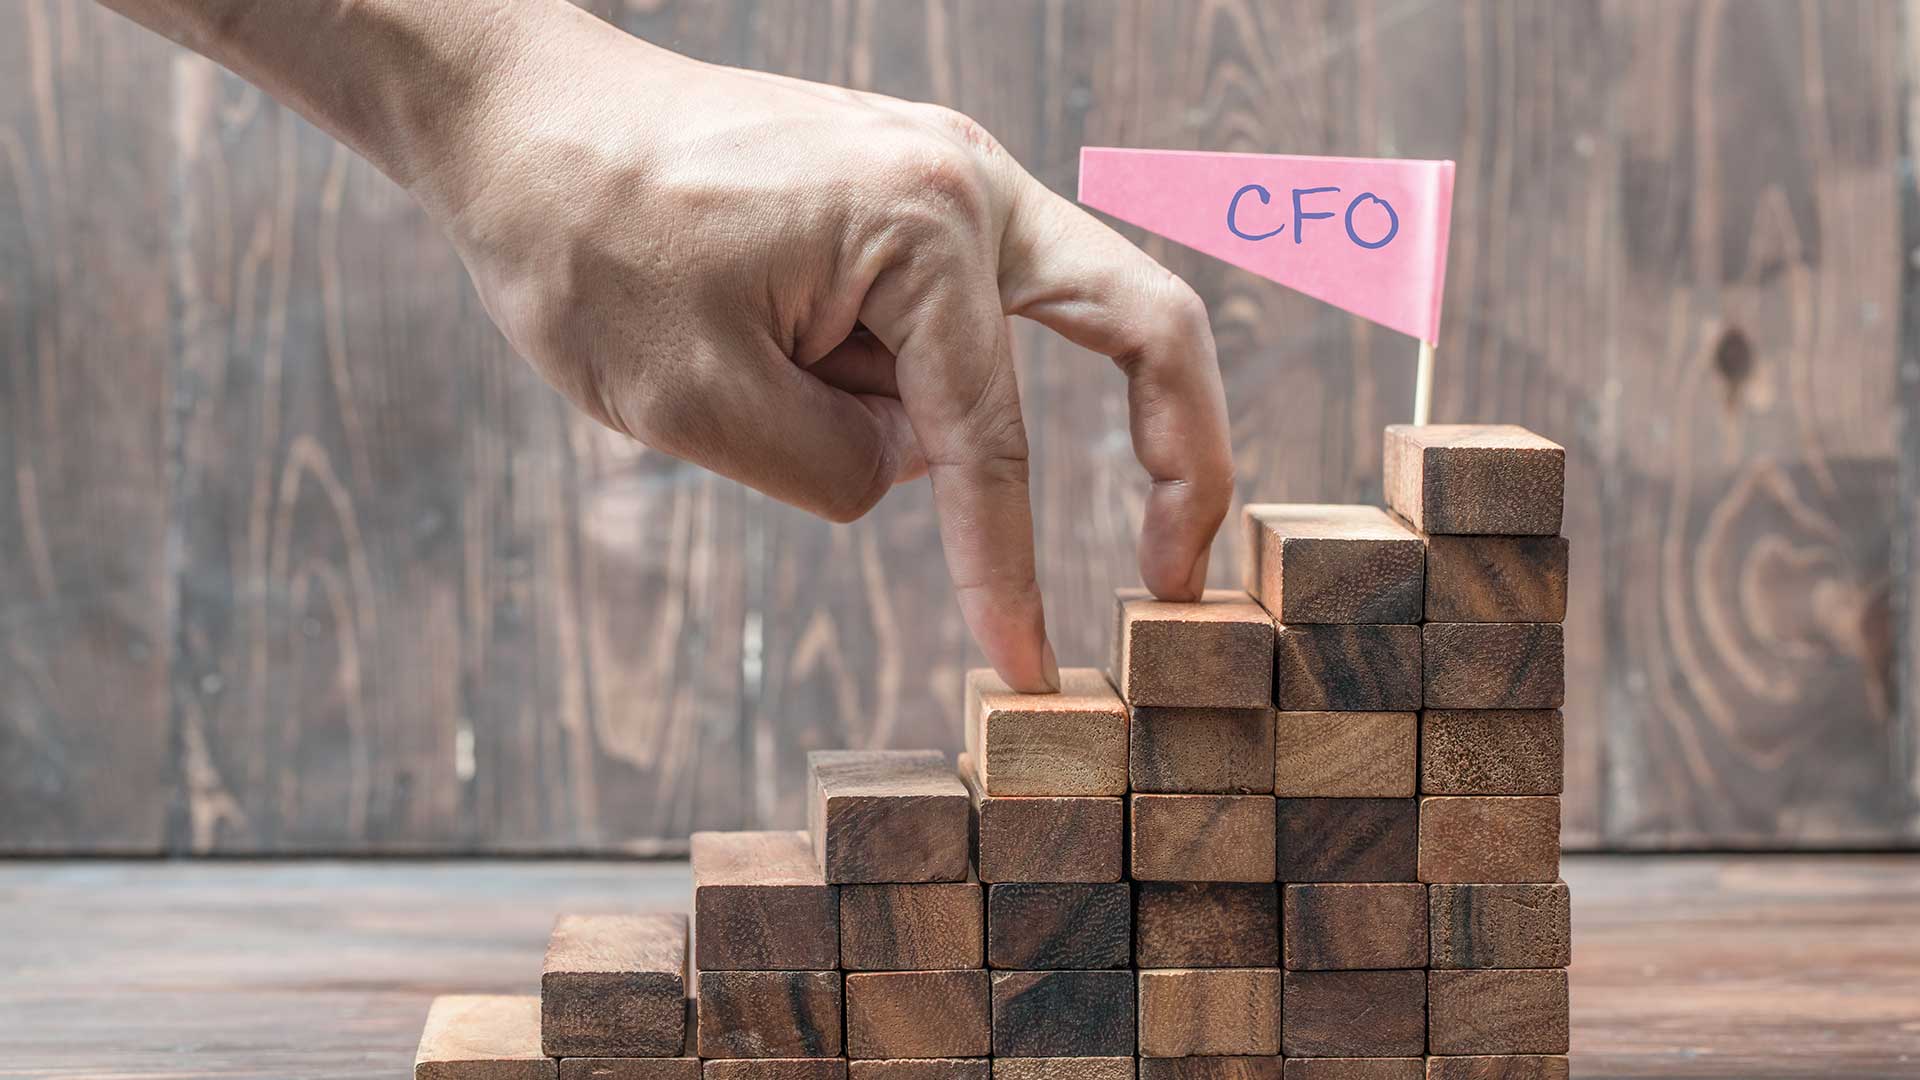 From treasurer to CFO